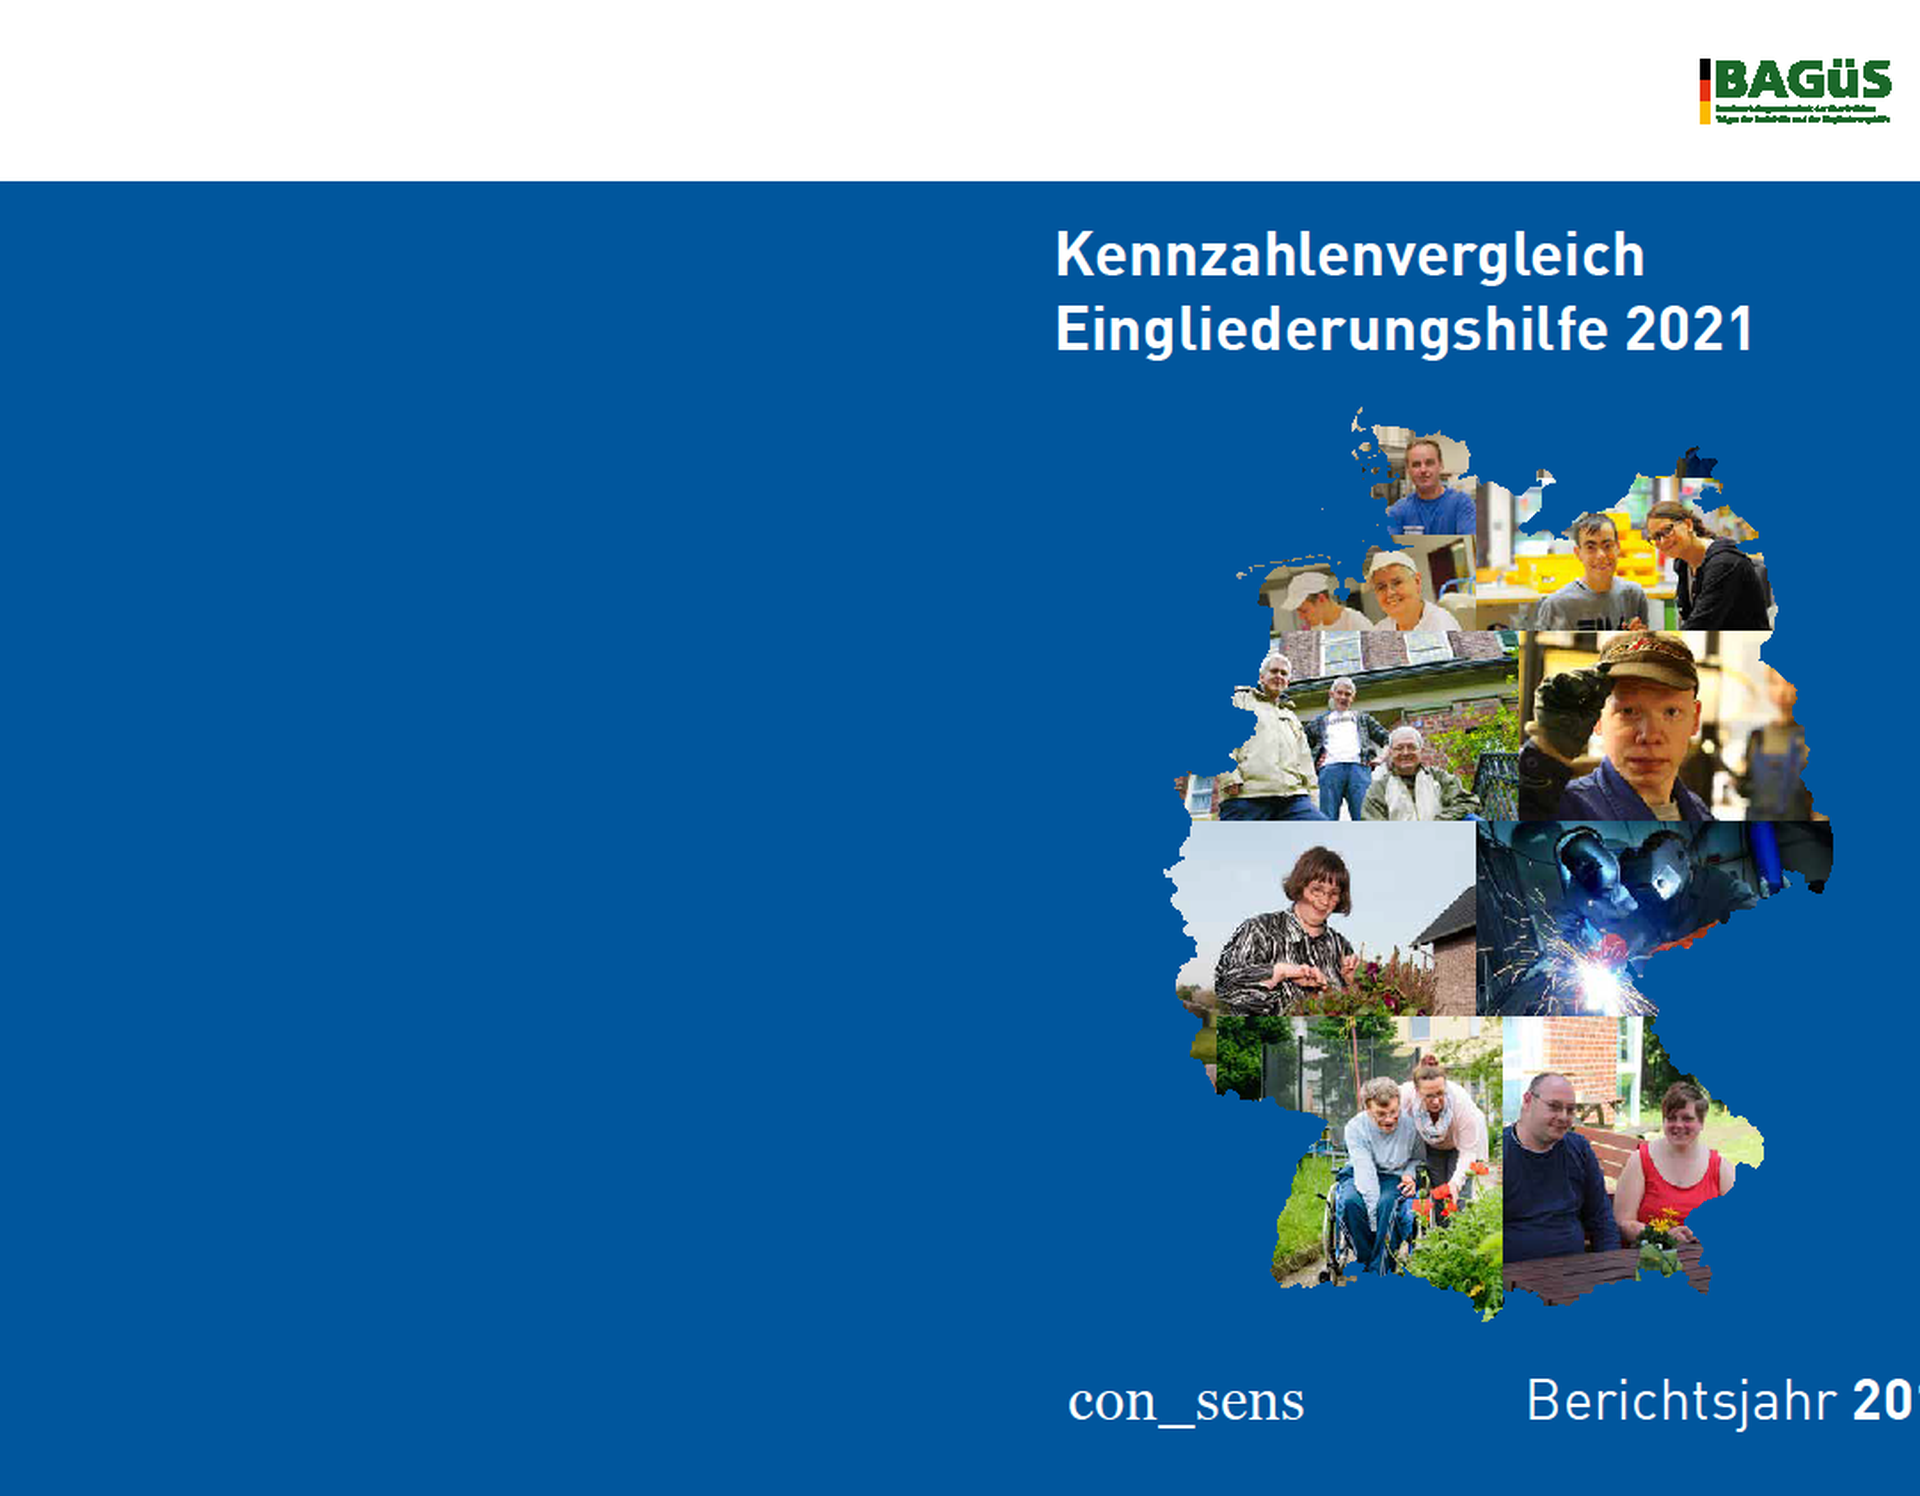 Das aktuelle Titelblatt des Kennzahlenvergleichs 2021 mit Bildern von Menschen in den Umrissen einer Deutschlandkarte. Quelle:BAGüS